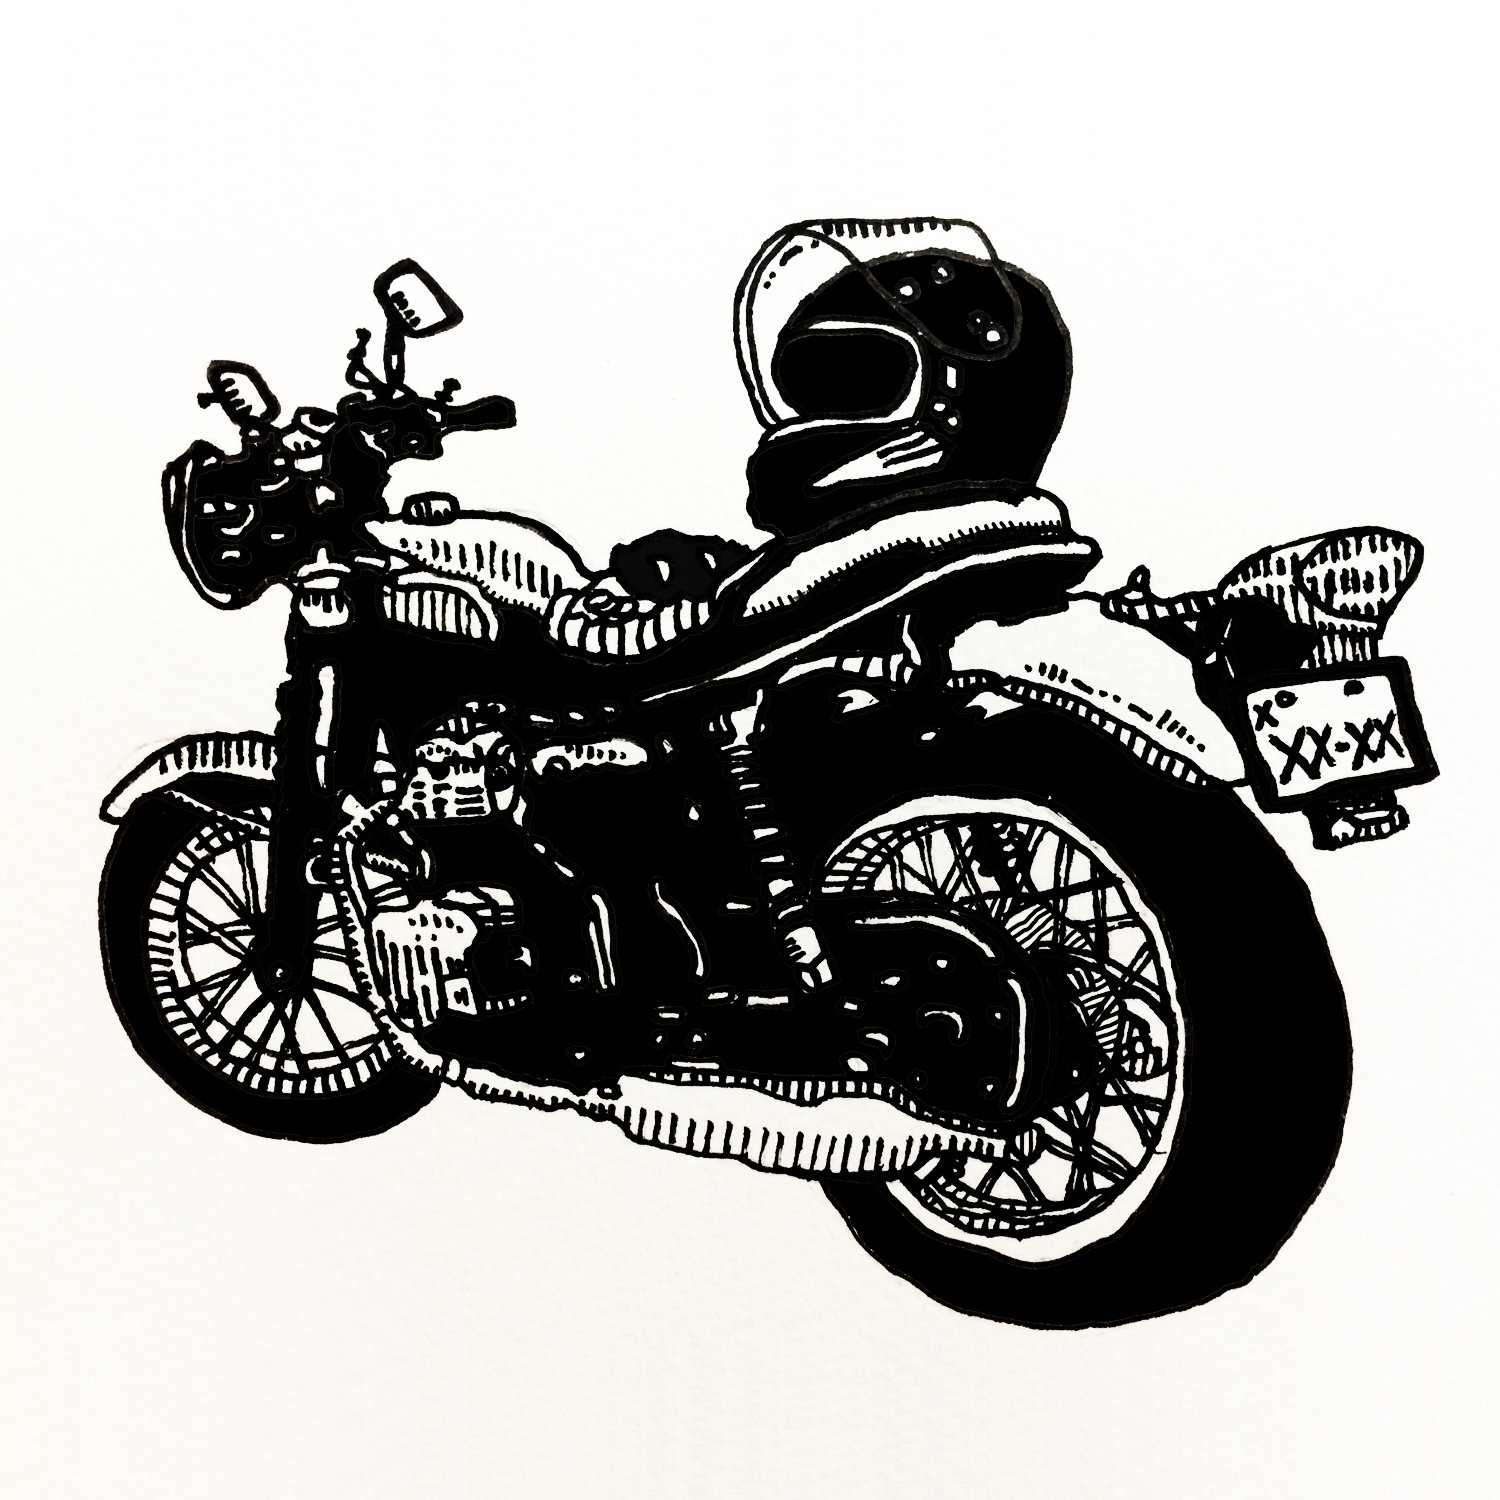 Twitter 上的 Uzura Bikes W400 Kawasaki Illustration W400 バイク イラスト バイク好きと繋がりたい T Co Qr7w4h1hon Twitter